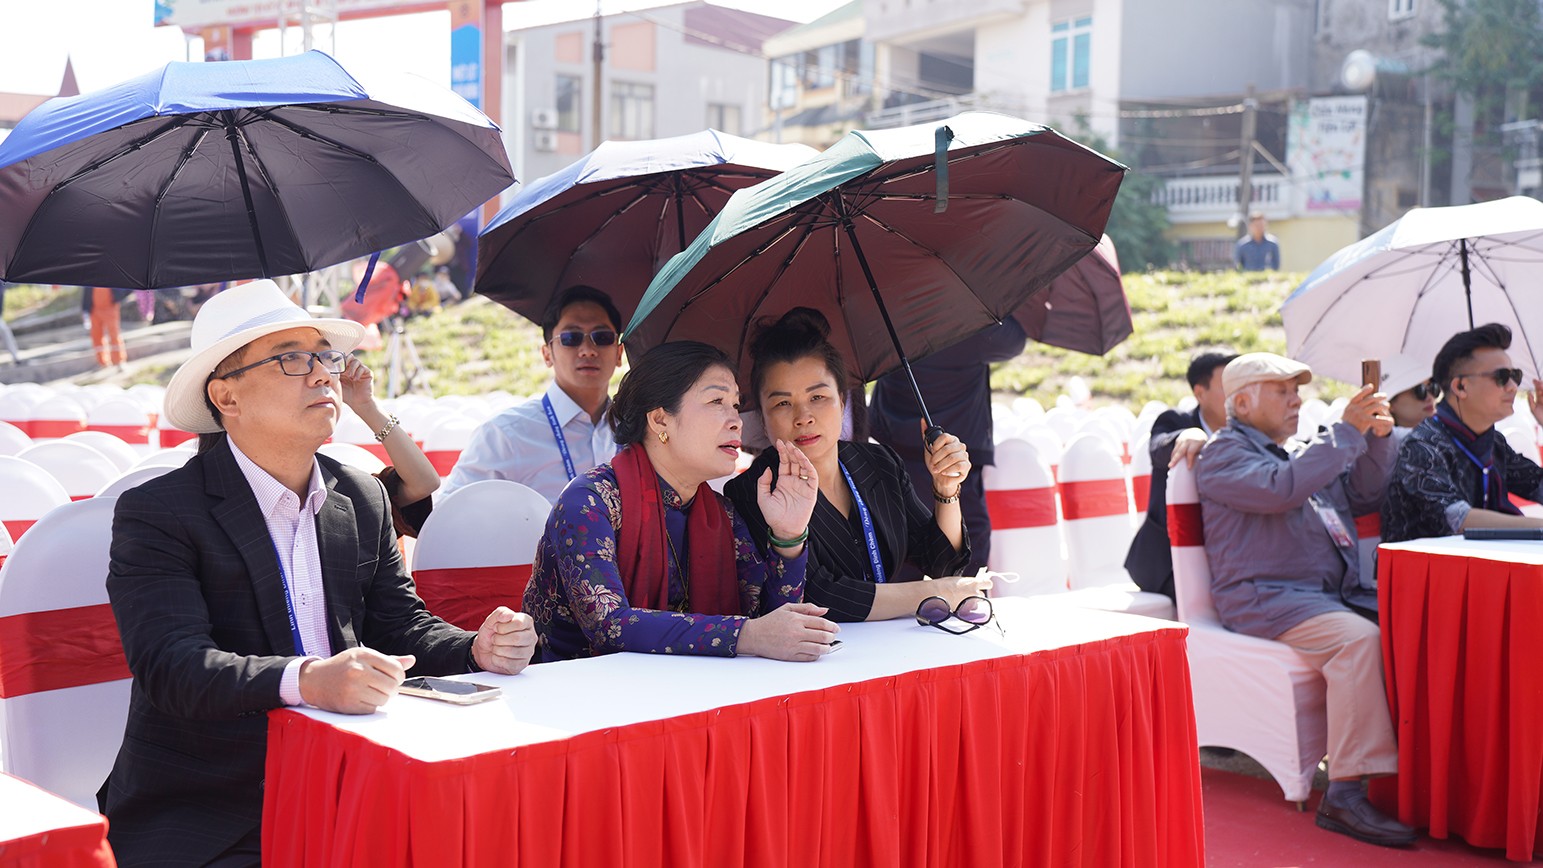 Phó Giám đốc Sở Văn hóa và Thể thao Hà Nội Trần Thị Vân Anh cũng Ban Tổ chức kiểm tra công tác chuẩn bị trước khi sự kiện diễn ra